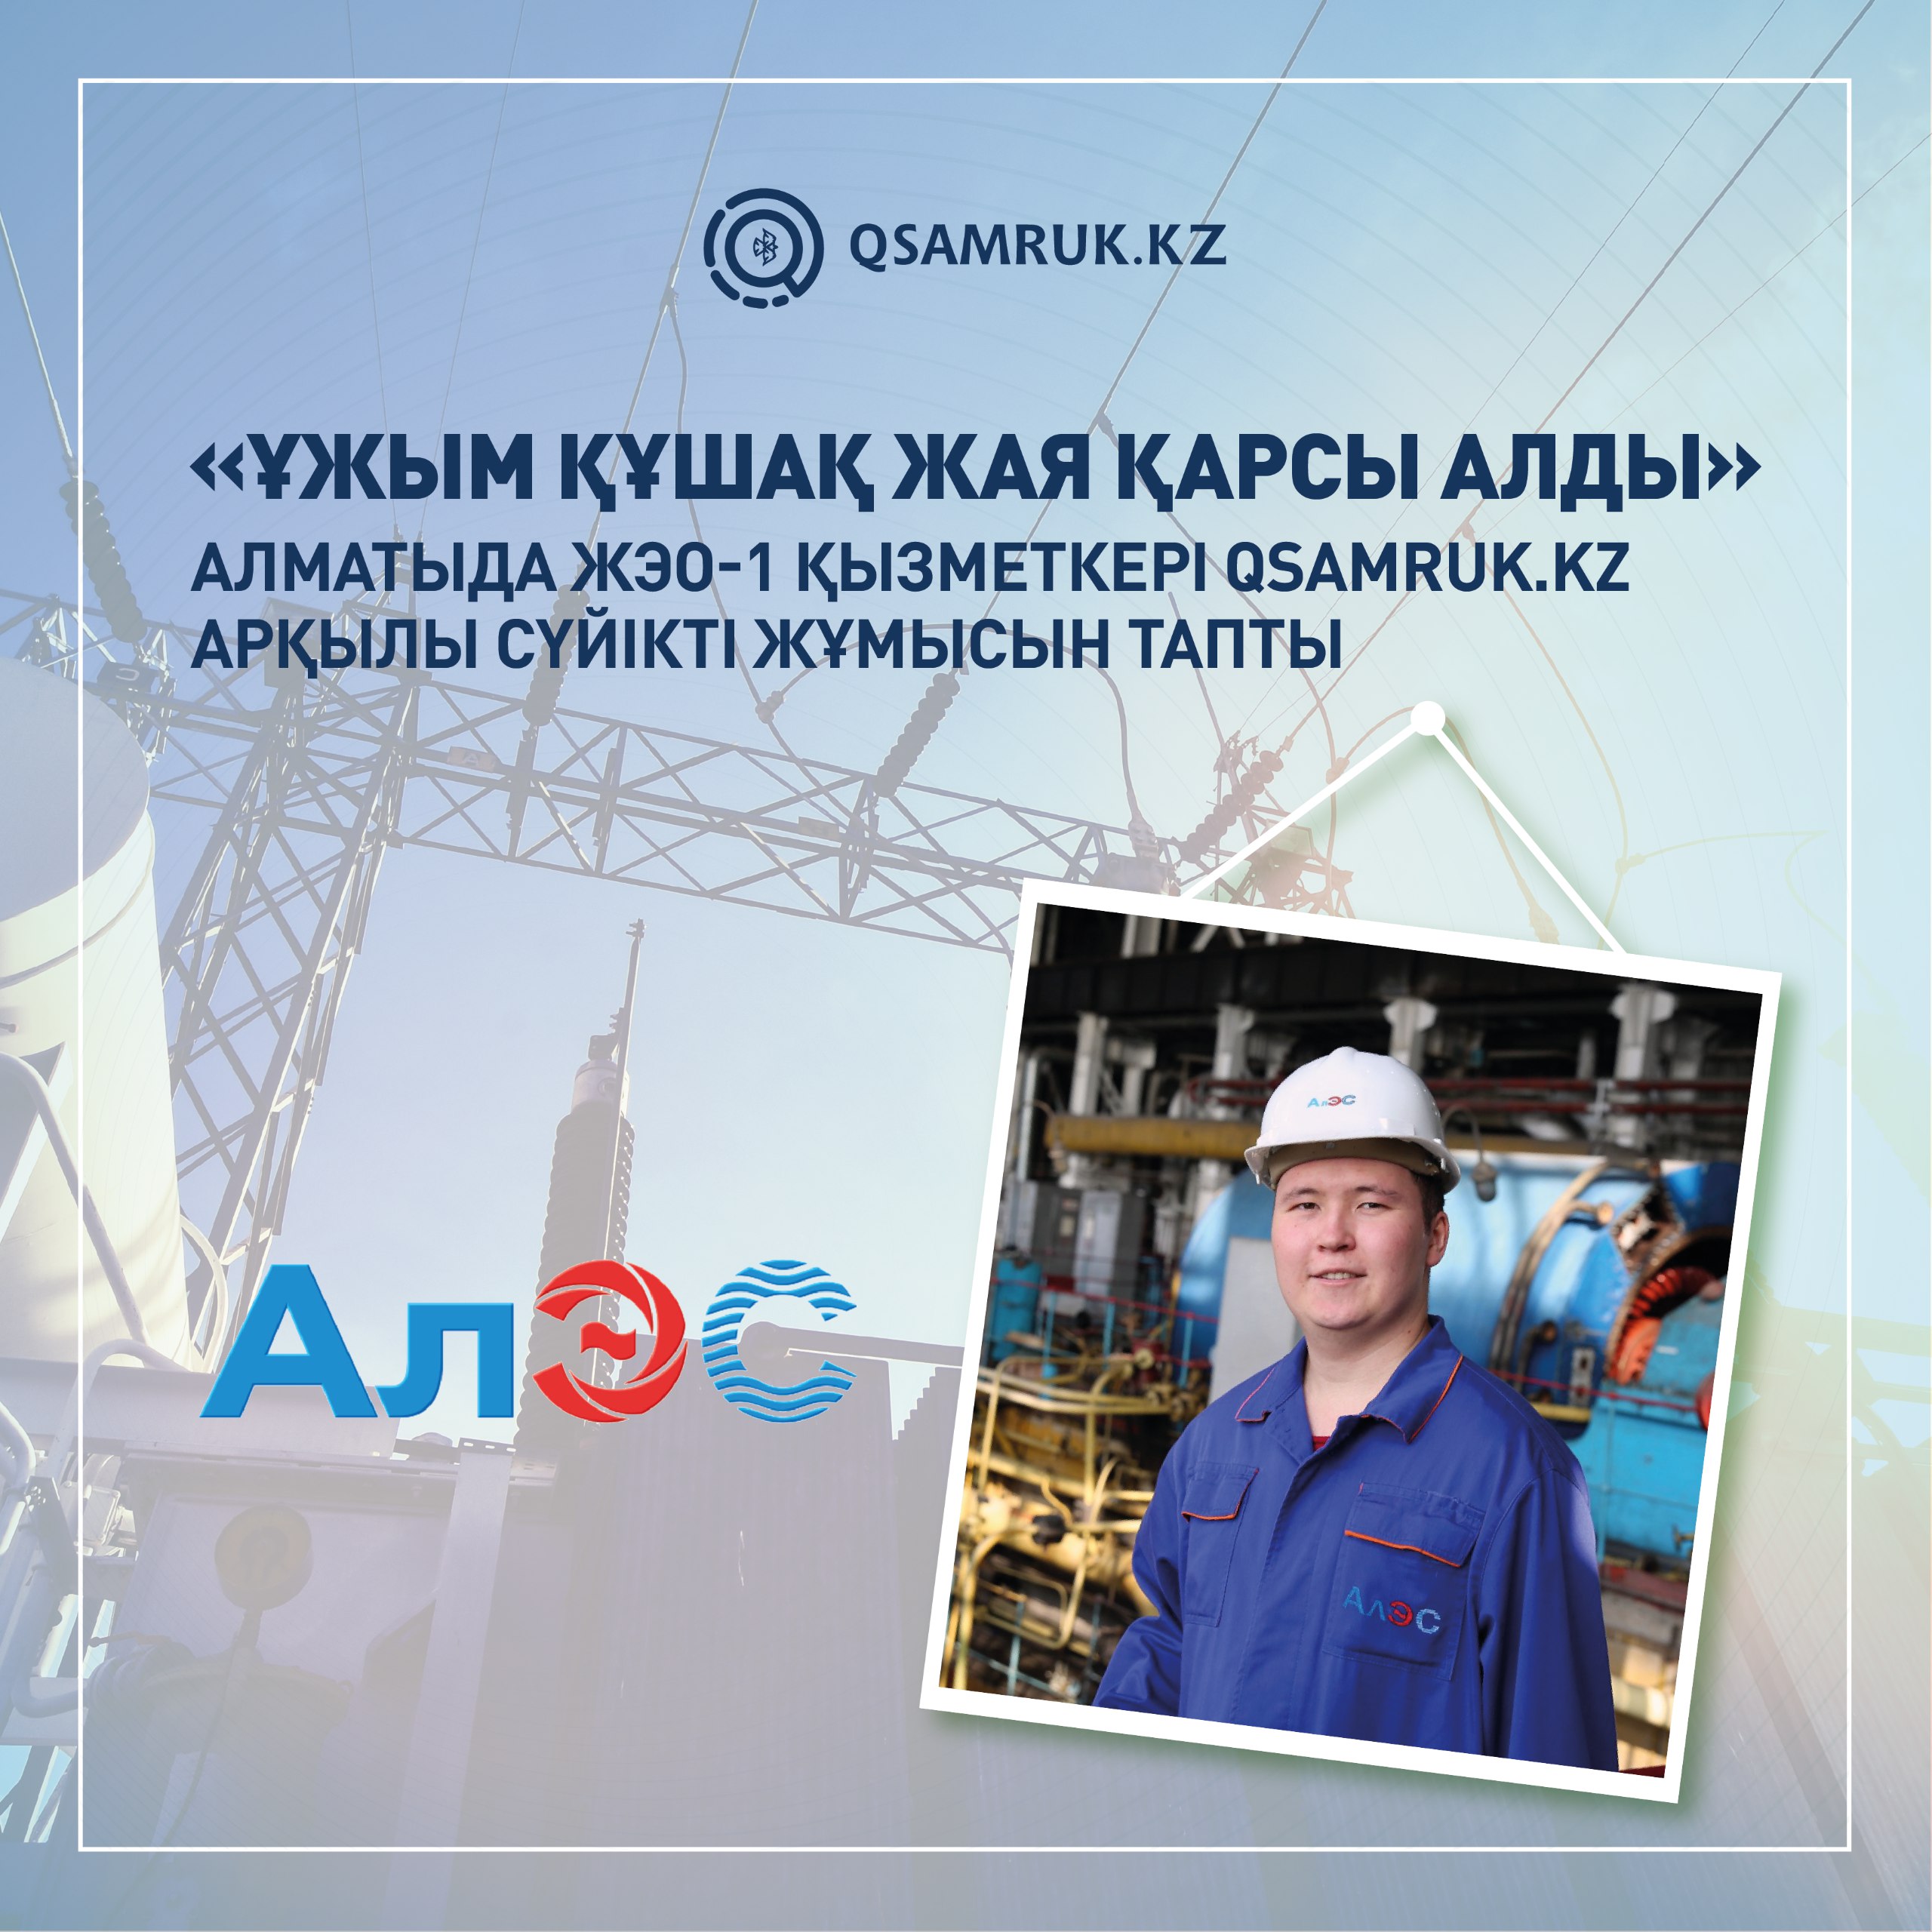 «Коллектив принял радушно». Сотрудник алматинской ТЭЦ-1 нашел любимую работу на Qsamruk.kz